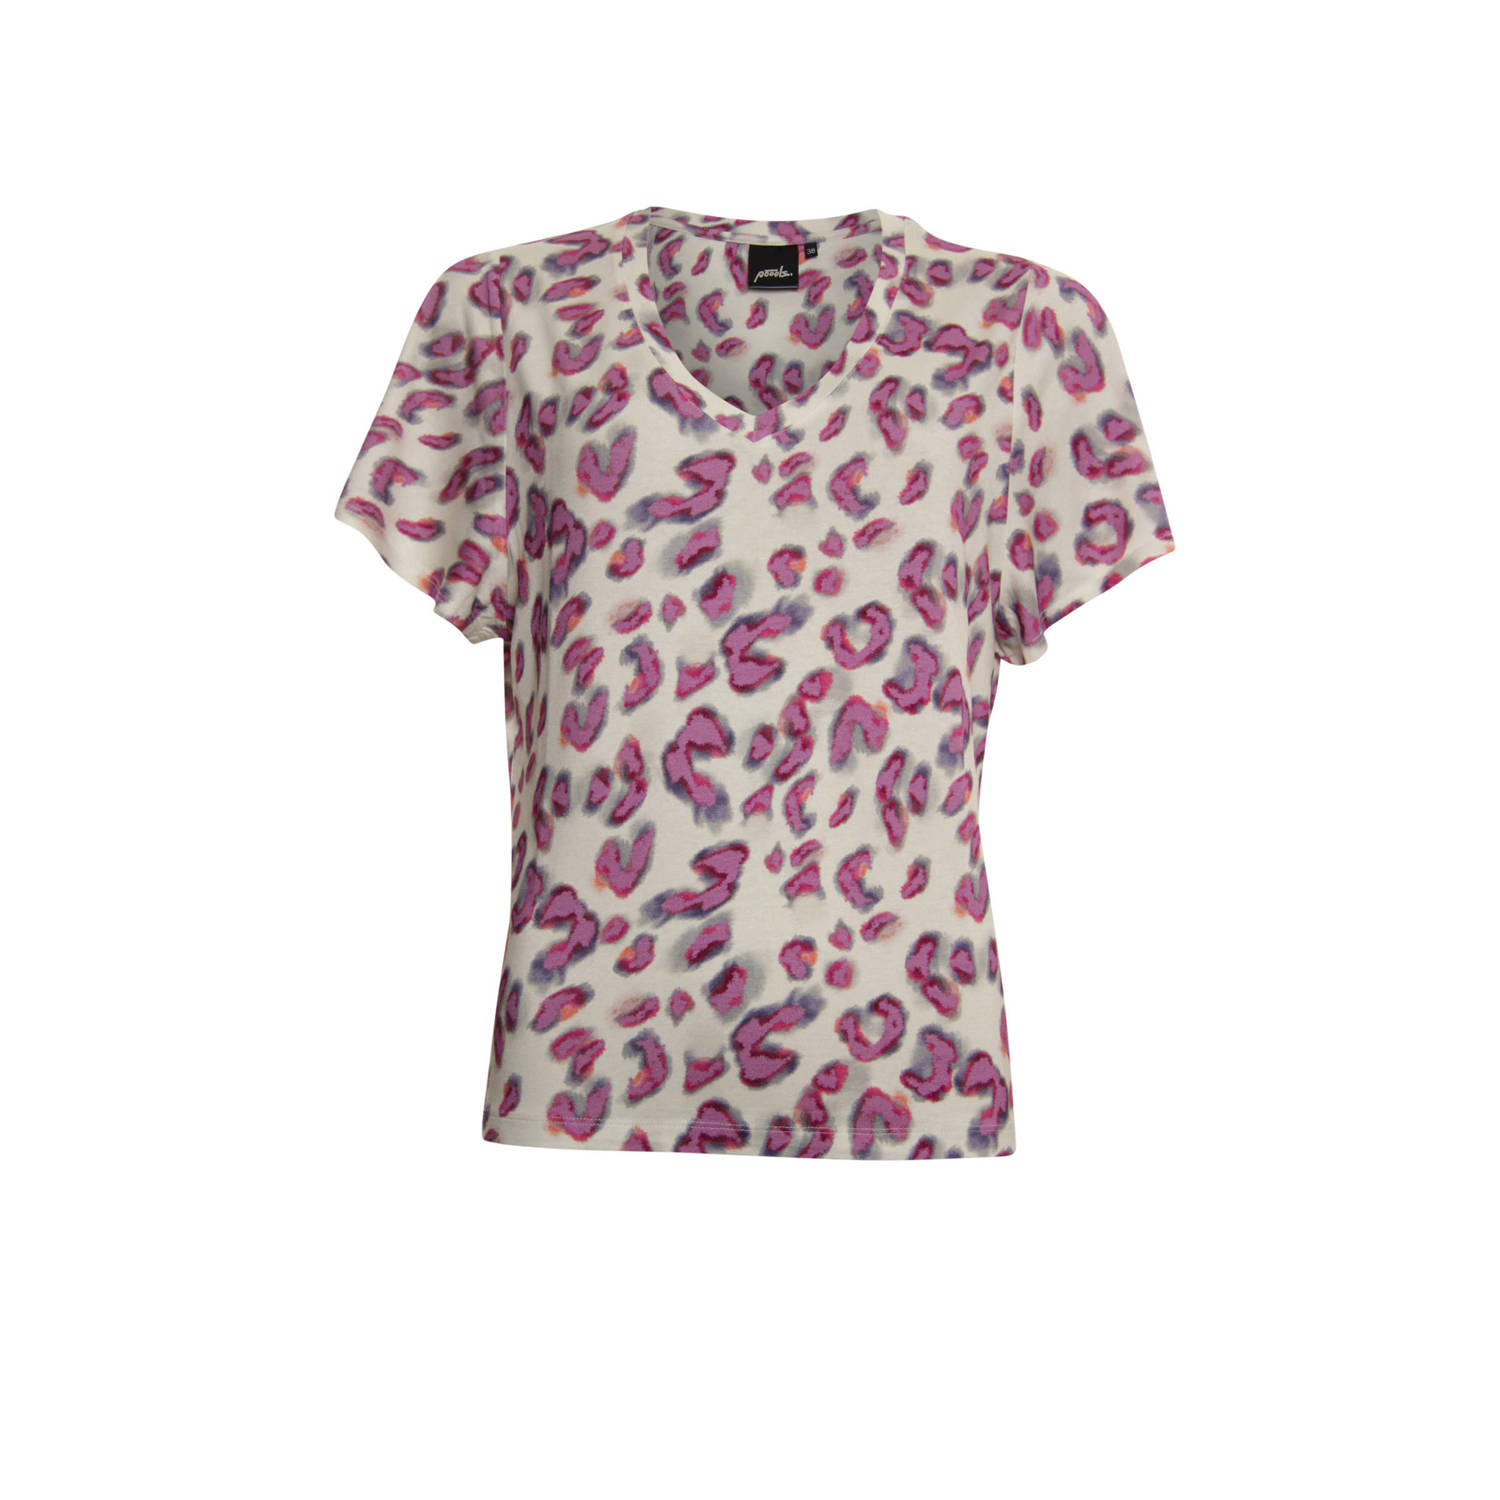 Poools geweven top T-shirt printed met panterprint roze